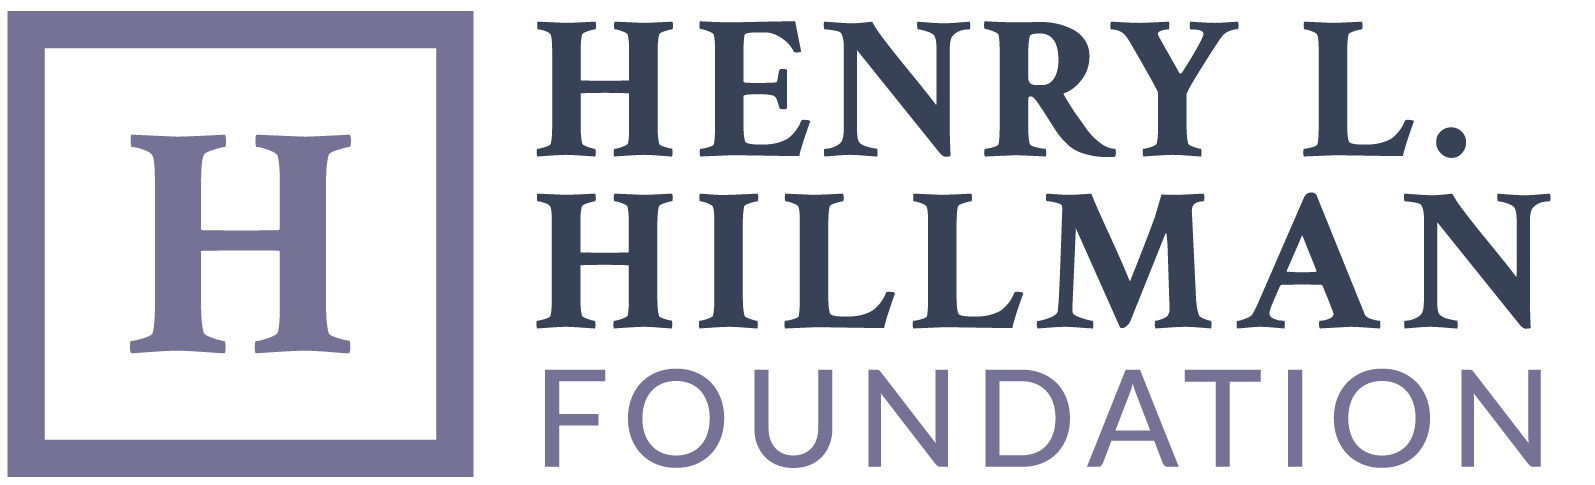 Henry L. Hillman Foundation